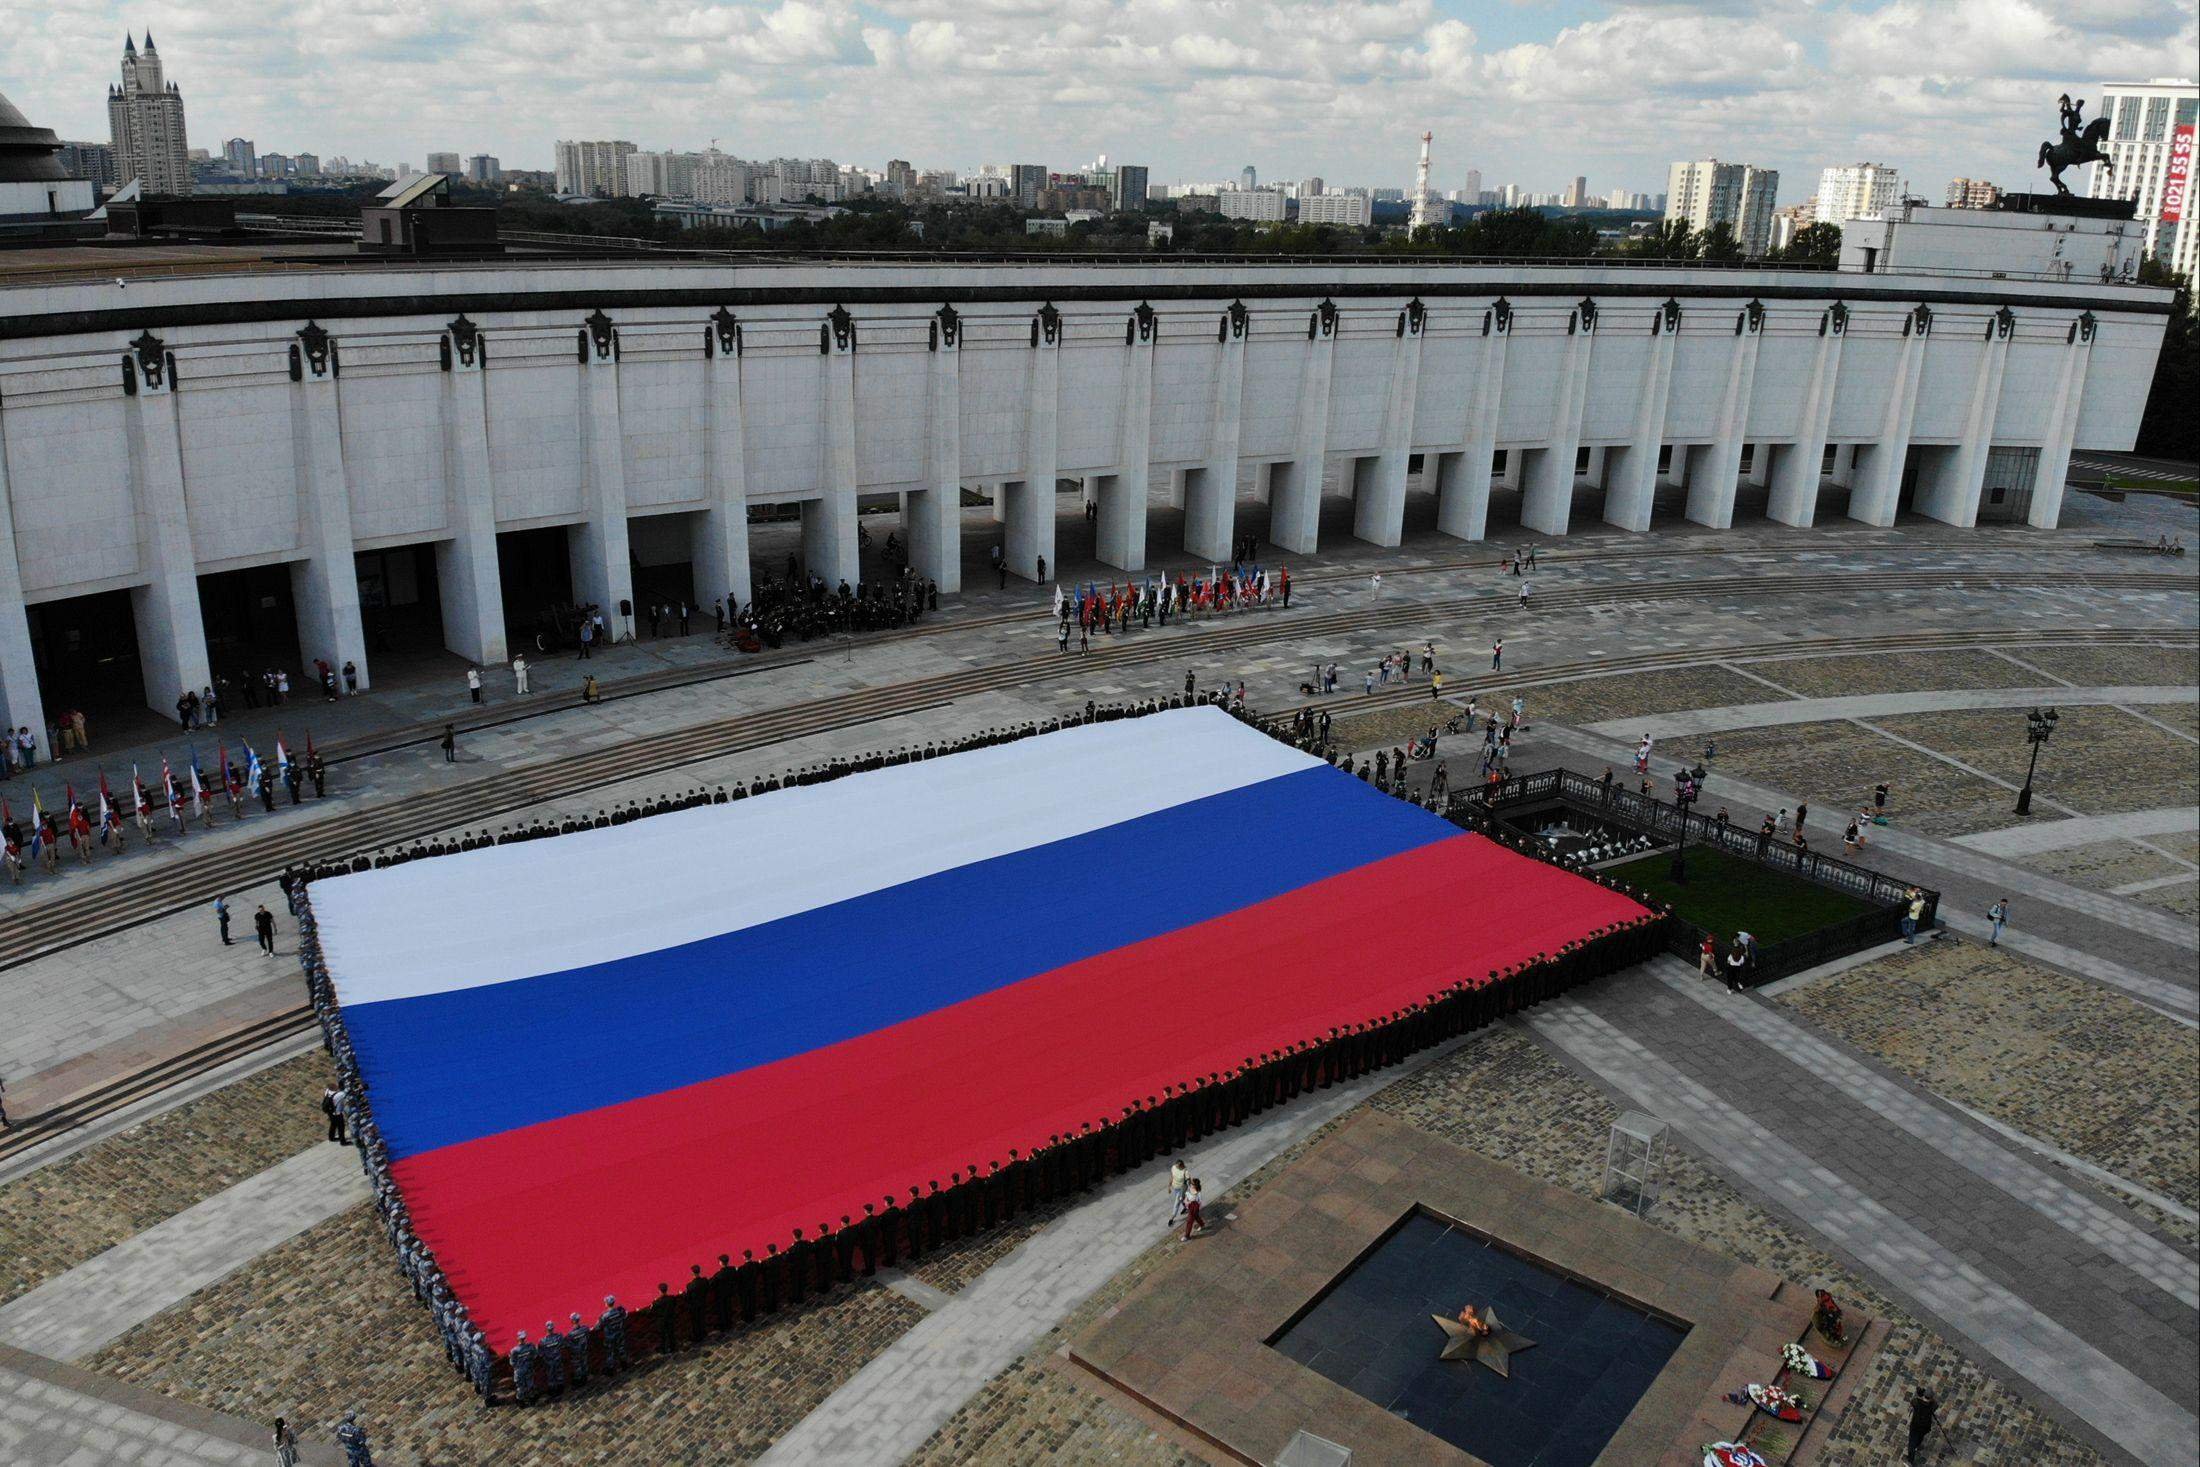 Включи россия огромная. Большой флаг России. Самый юольшой флаг Росси. Огромный флаг России. Огромный флагшток России.